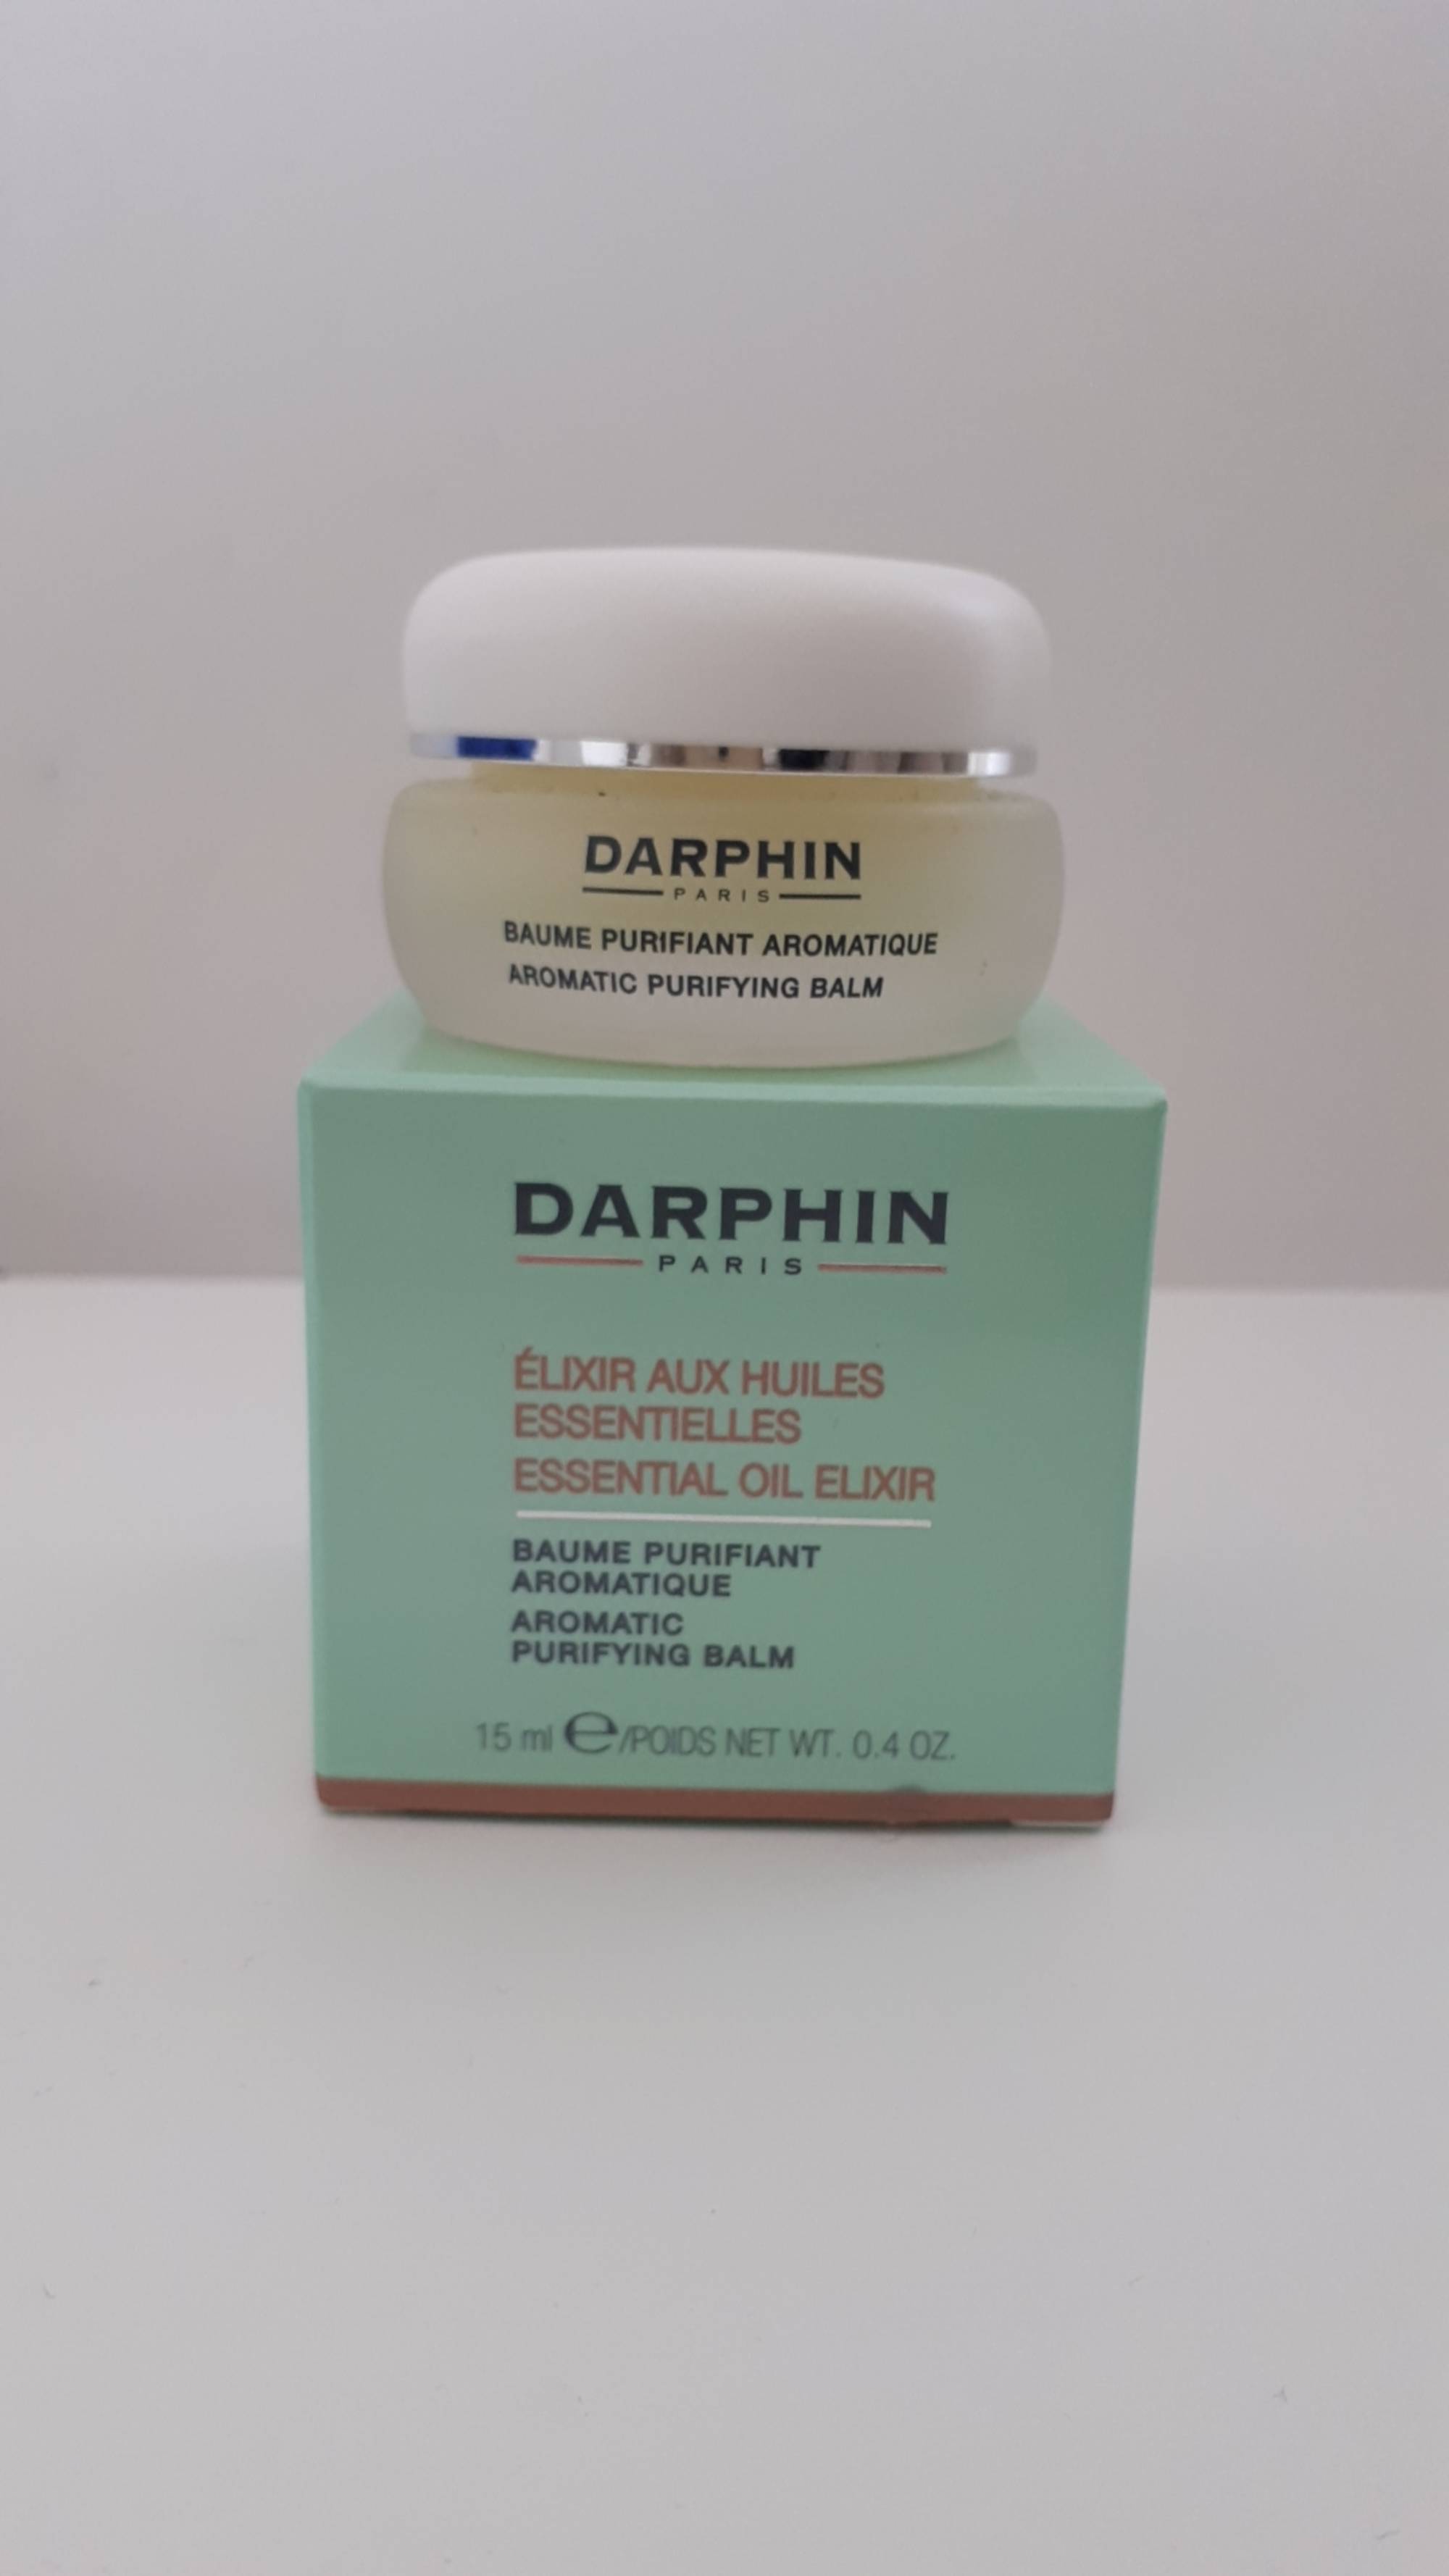 DARPHIN - Élixir aux huiles essentielles - Baume purifiant aromatique